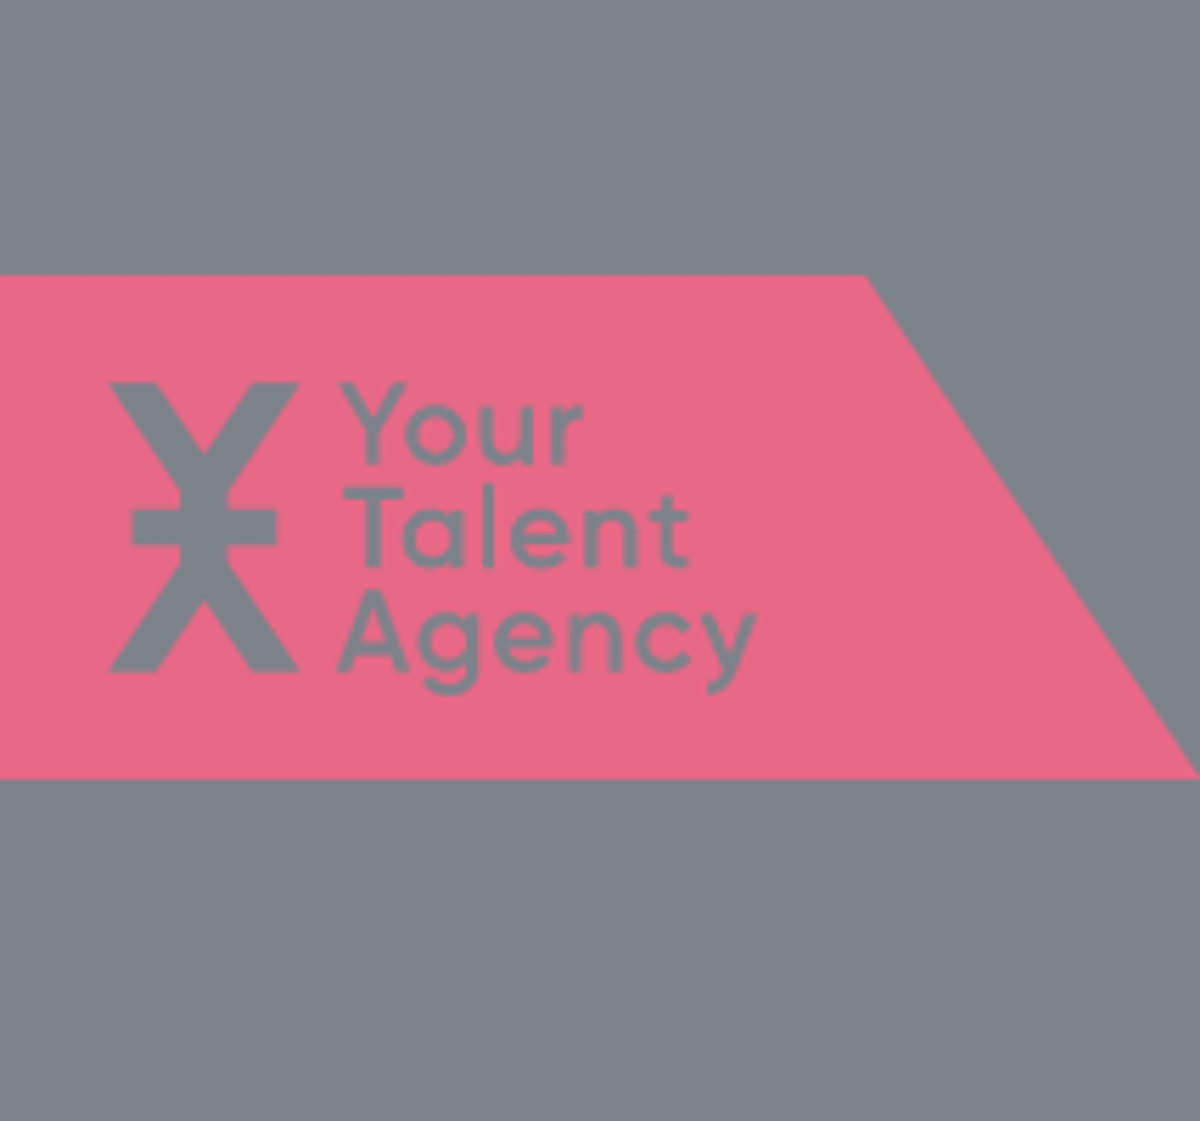 Bureau Zwart Wit en Your Expat Agency bundelen krachten als Your Talent Agency image